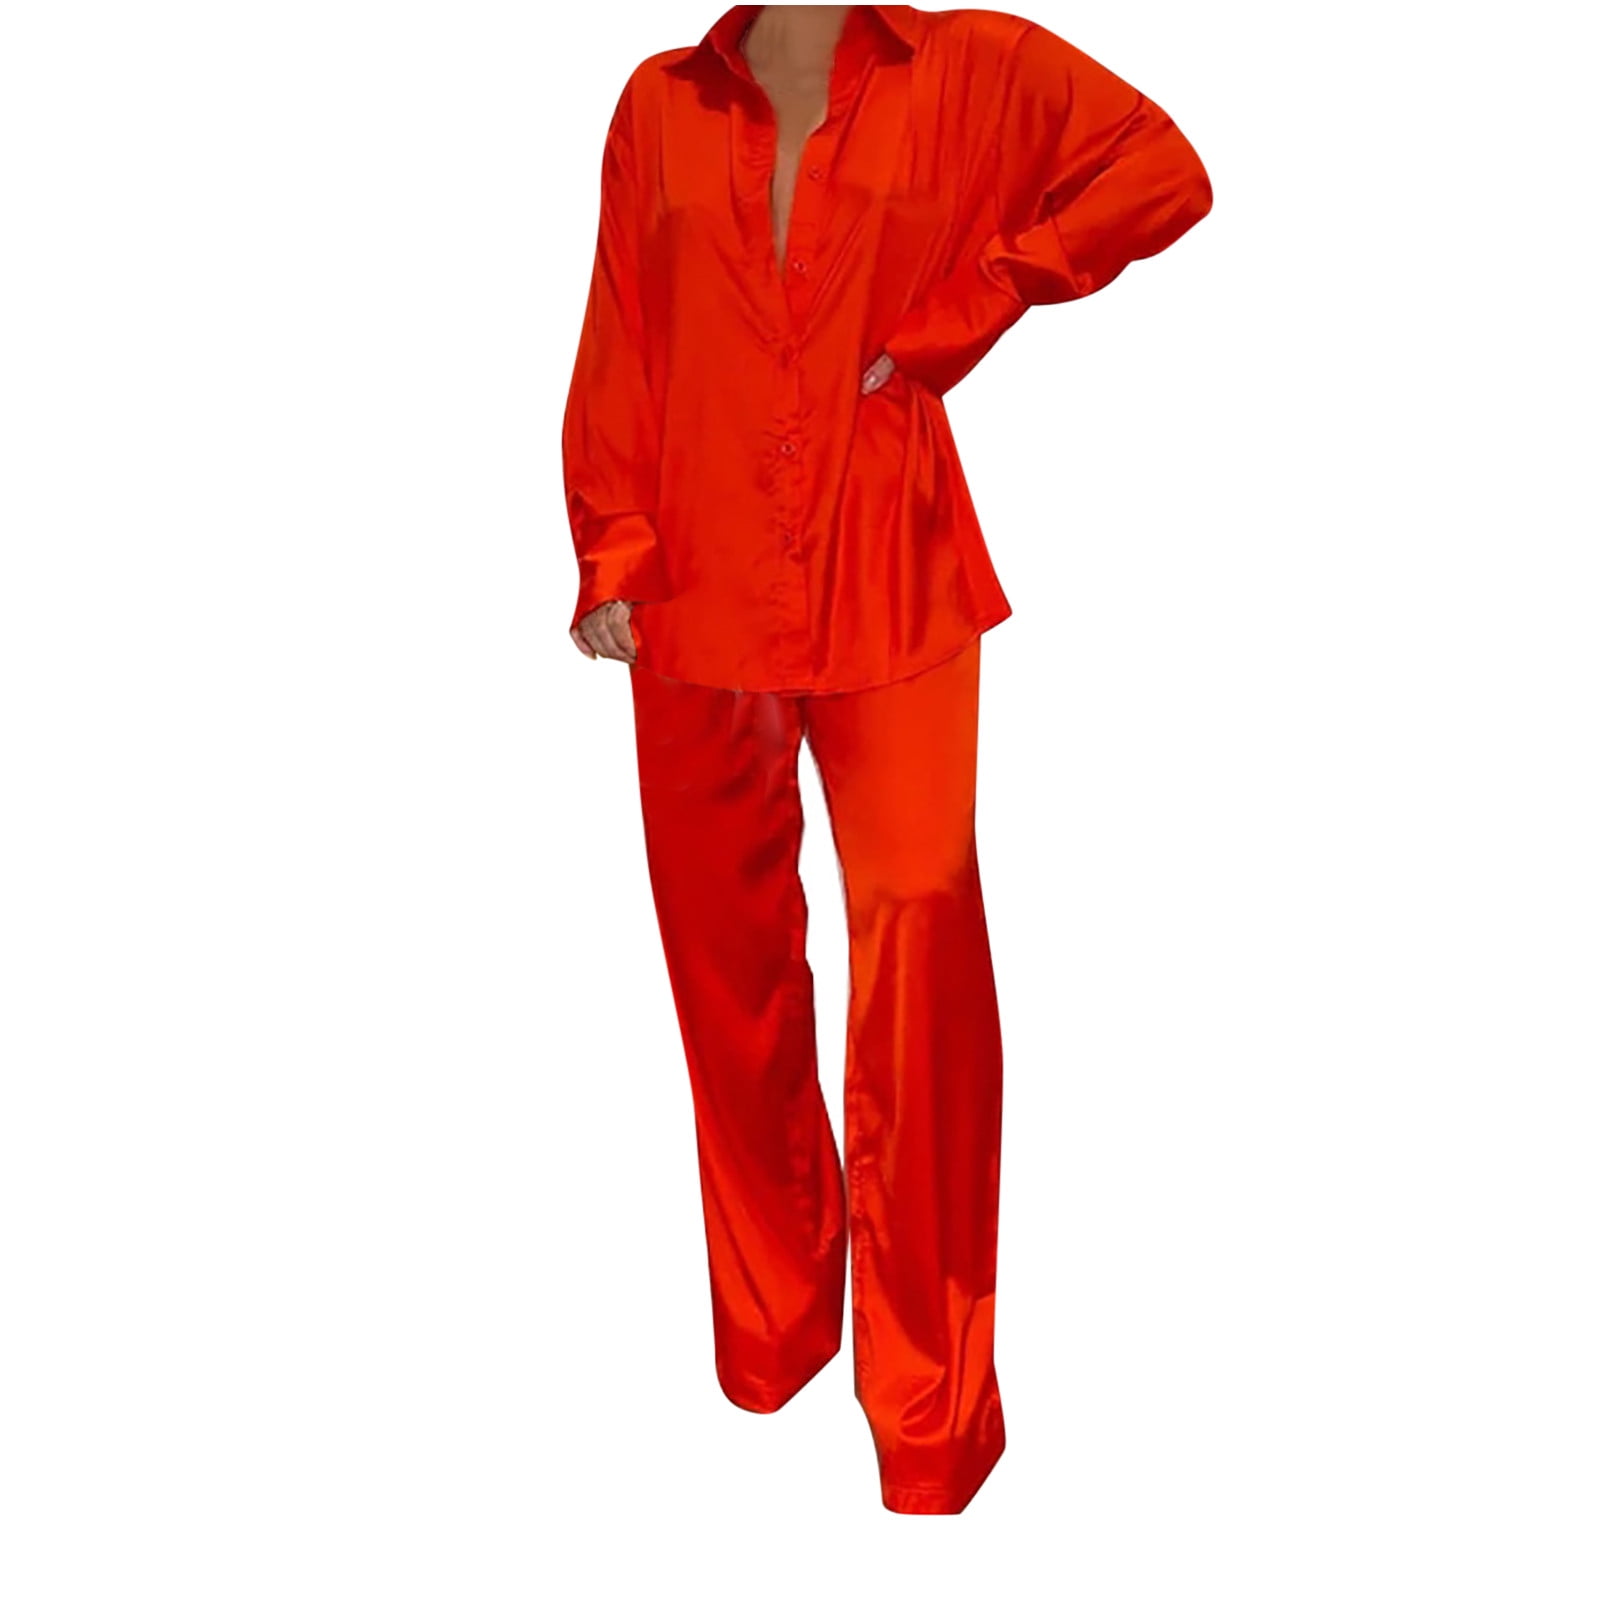 AherBiu Pajamas Sets for Women 2 Piece Outfits Satin Pajamas Long